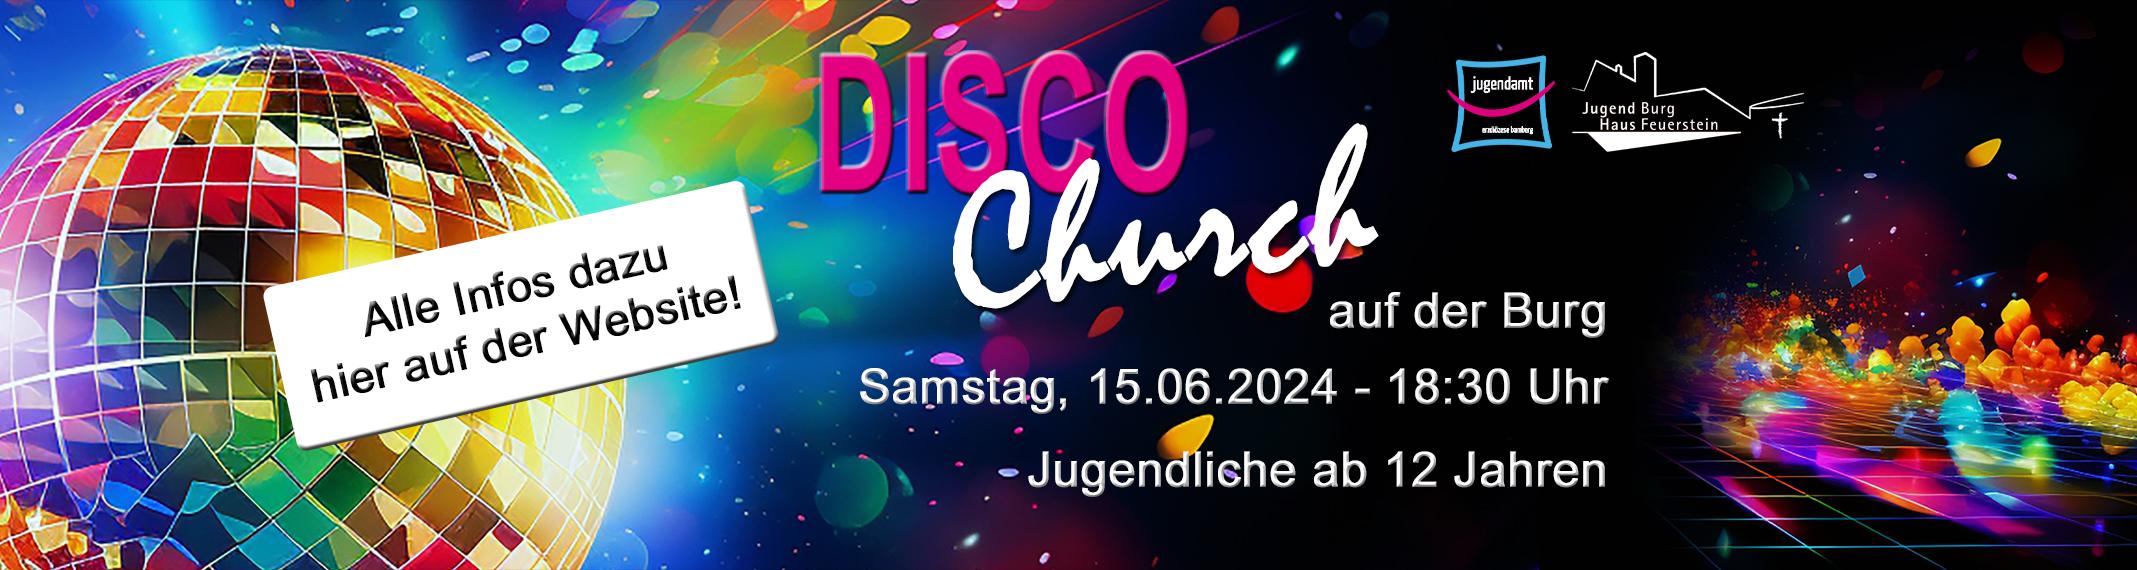 Disco-Church